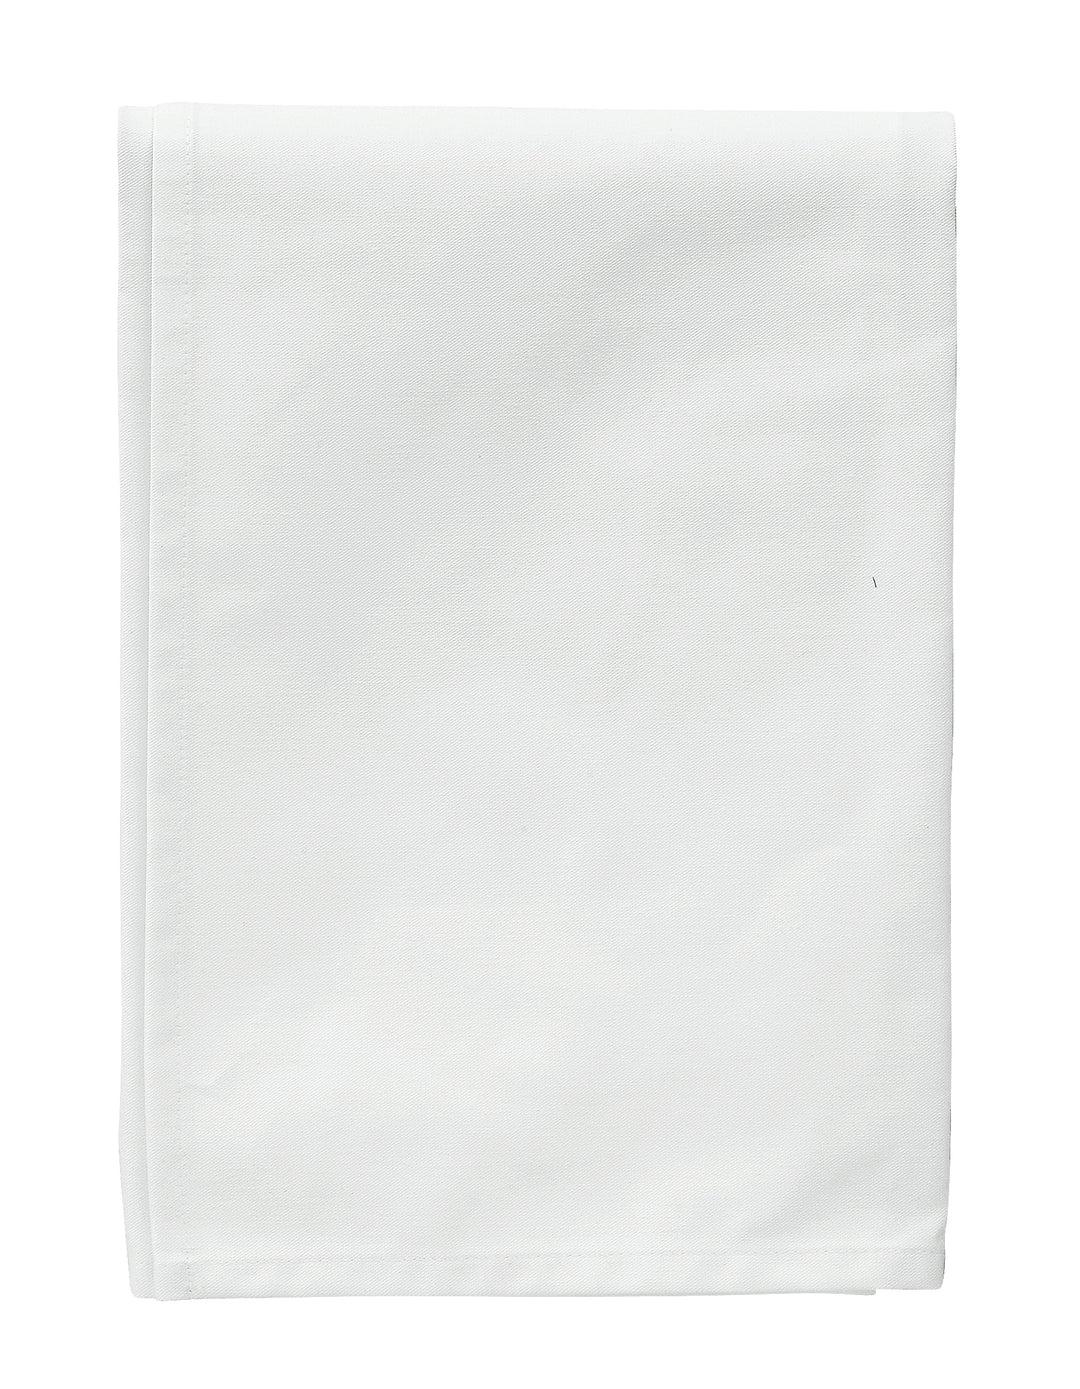 Valkoinen sivuliina tarjoilijalle. Koko 69x69 cm